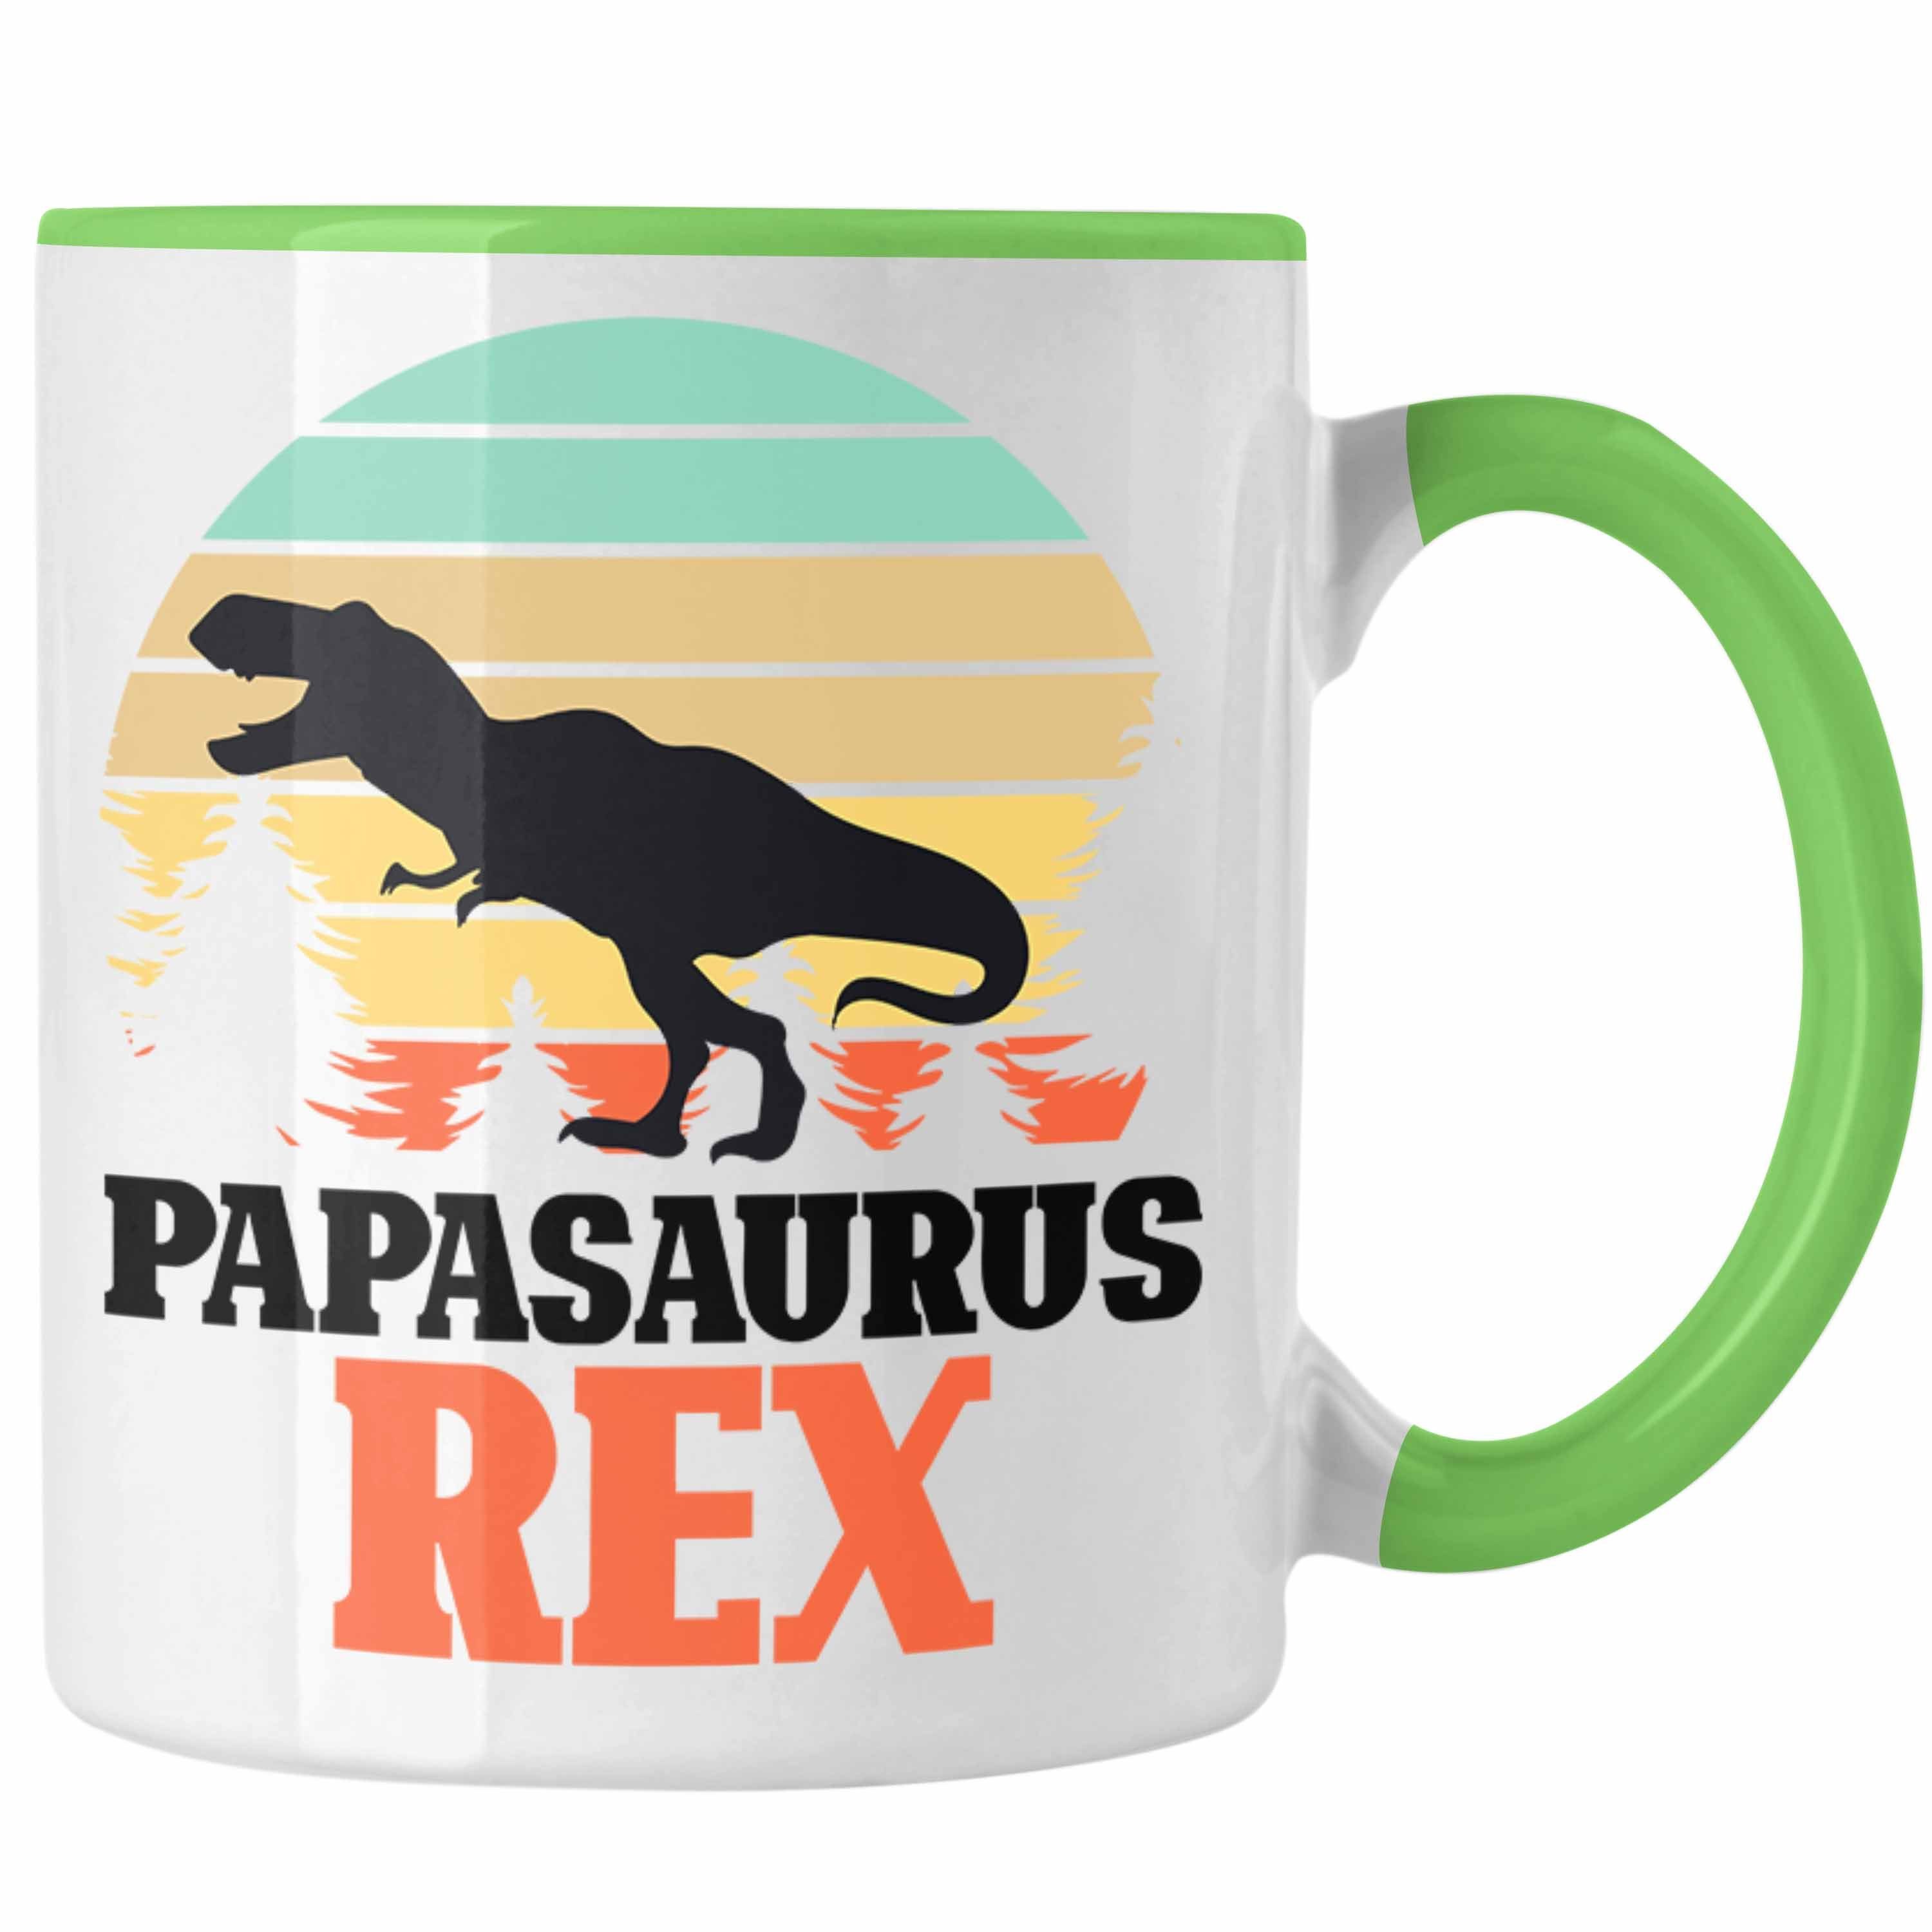 Trendation Grün Vatertag Geschenk Tasse Papa Rex Gesche Vater Lustiges Tasse für Papasaurus